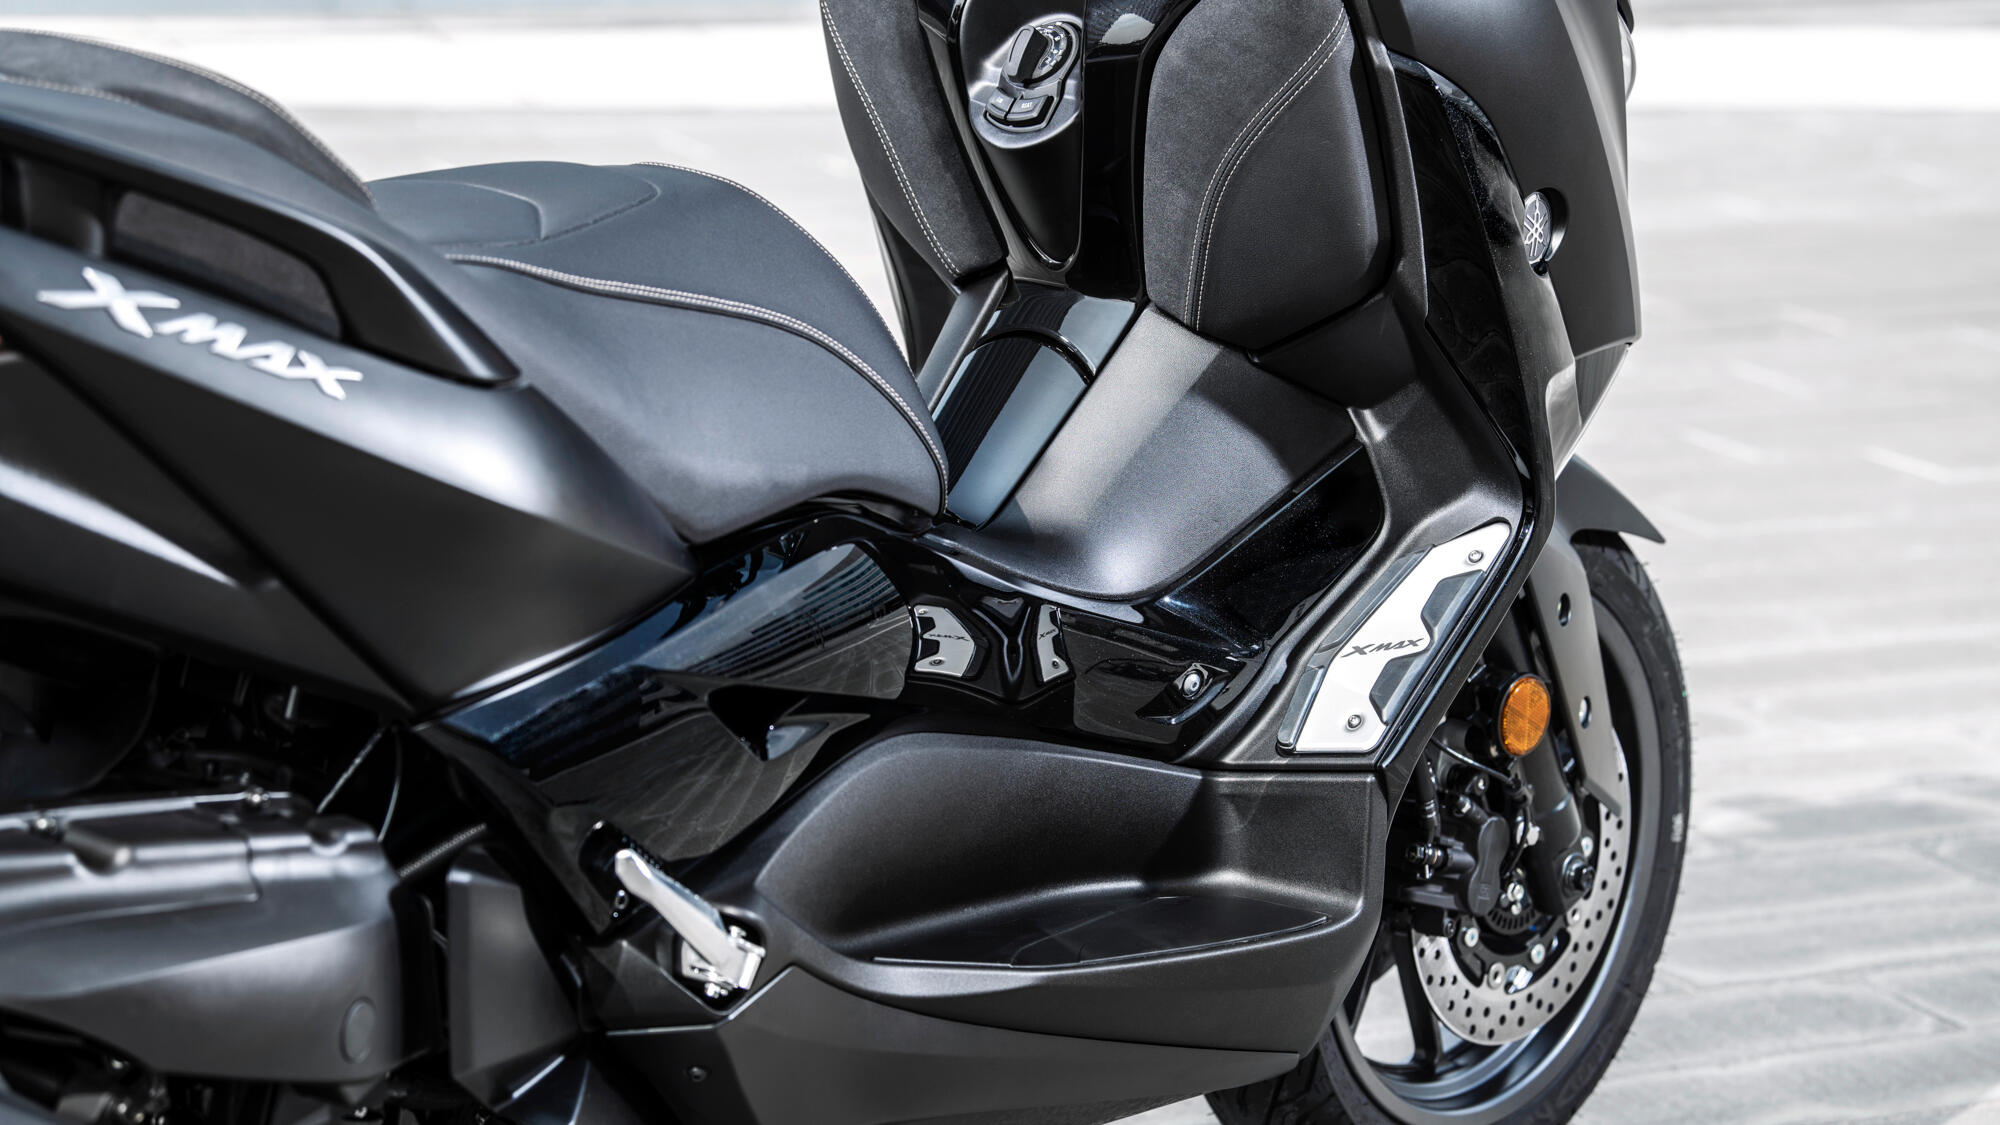  XMAX  250 IRON MAX 2019  Teknik zellikler Yamaha Motor 